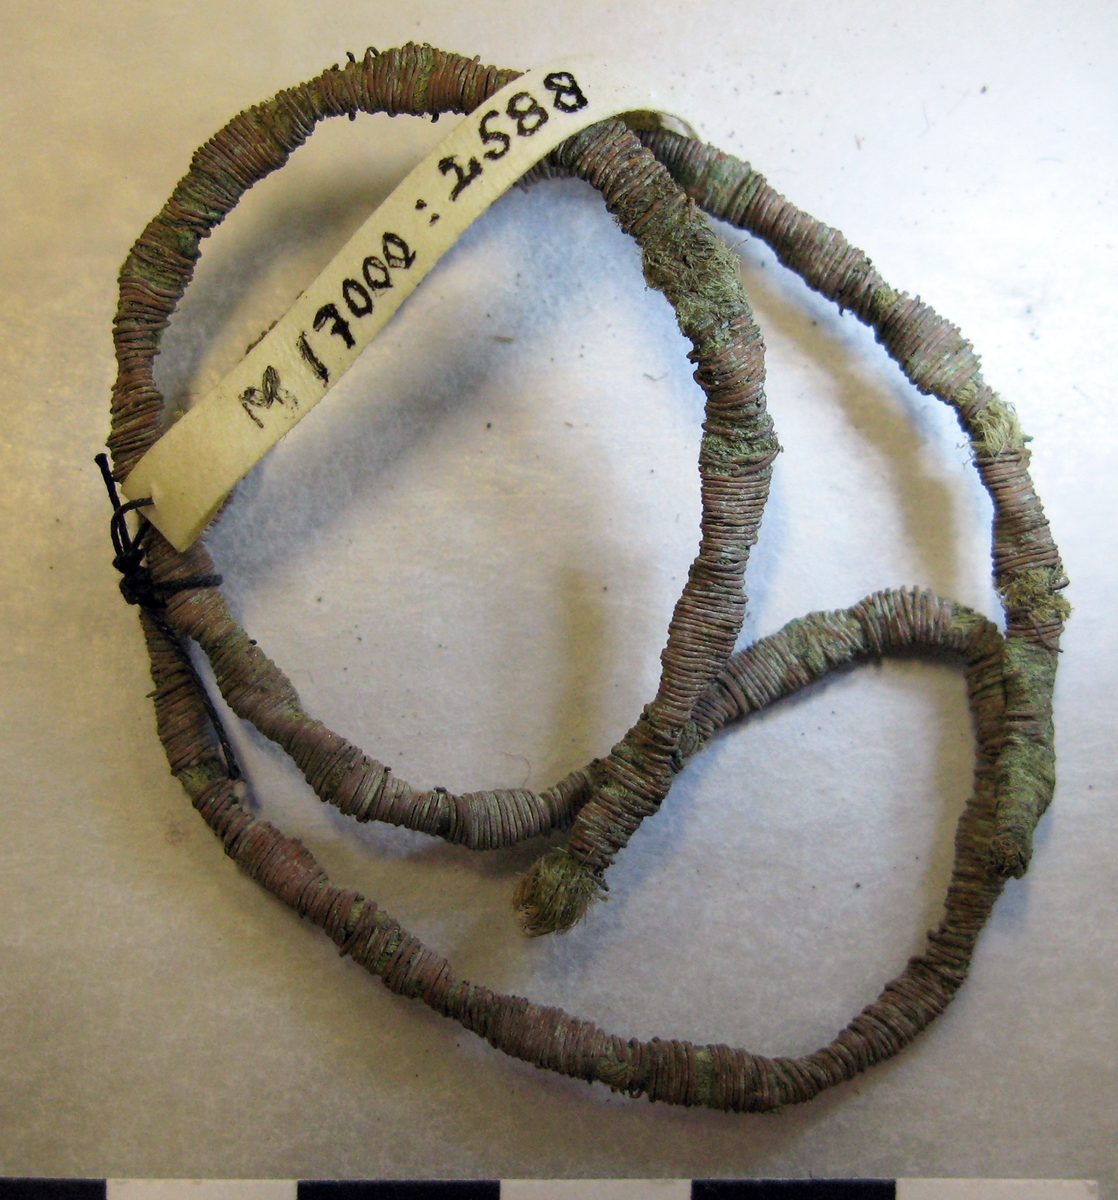 Metalltråd gjord av platt metall (lan), troligen av brons, lindad runt en växtfiberkärna. Tråden är "vriden" på längden troligen på grund av hur den använts. I ena änden är den avslutad och i den andra trasig/avsliten. Metalltråden kan ha använts som en s k galon, ett dekorband av metalltråd som sys på ett klädesplagg el dyl. Se exempel på Gustav II Adolfs tröja från 1661 på bifogad bild under Referenser/länkade filer.